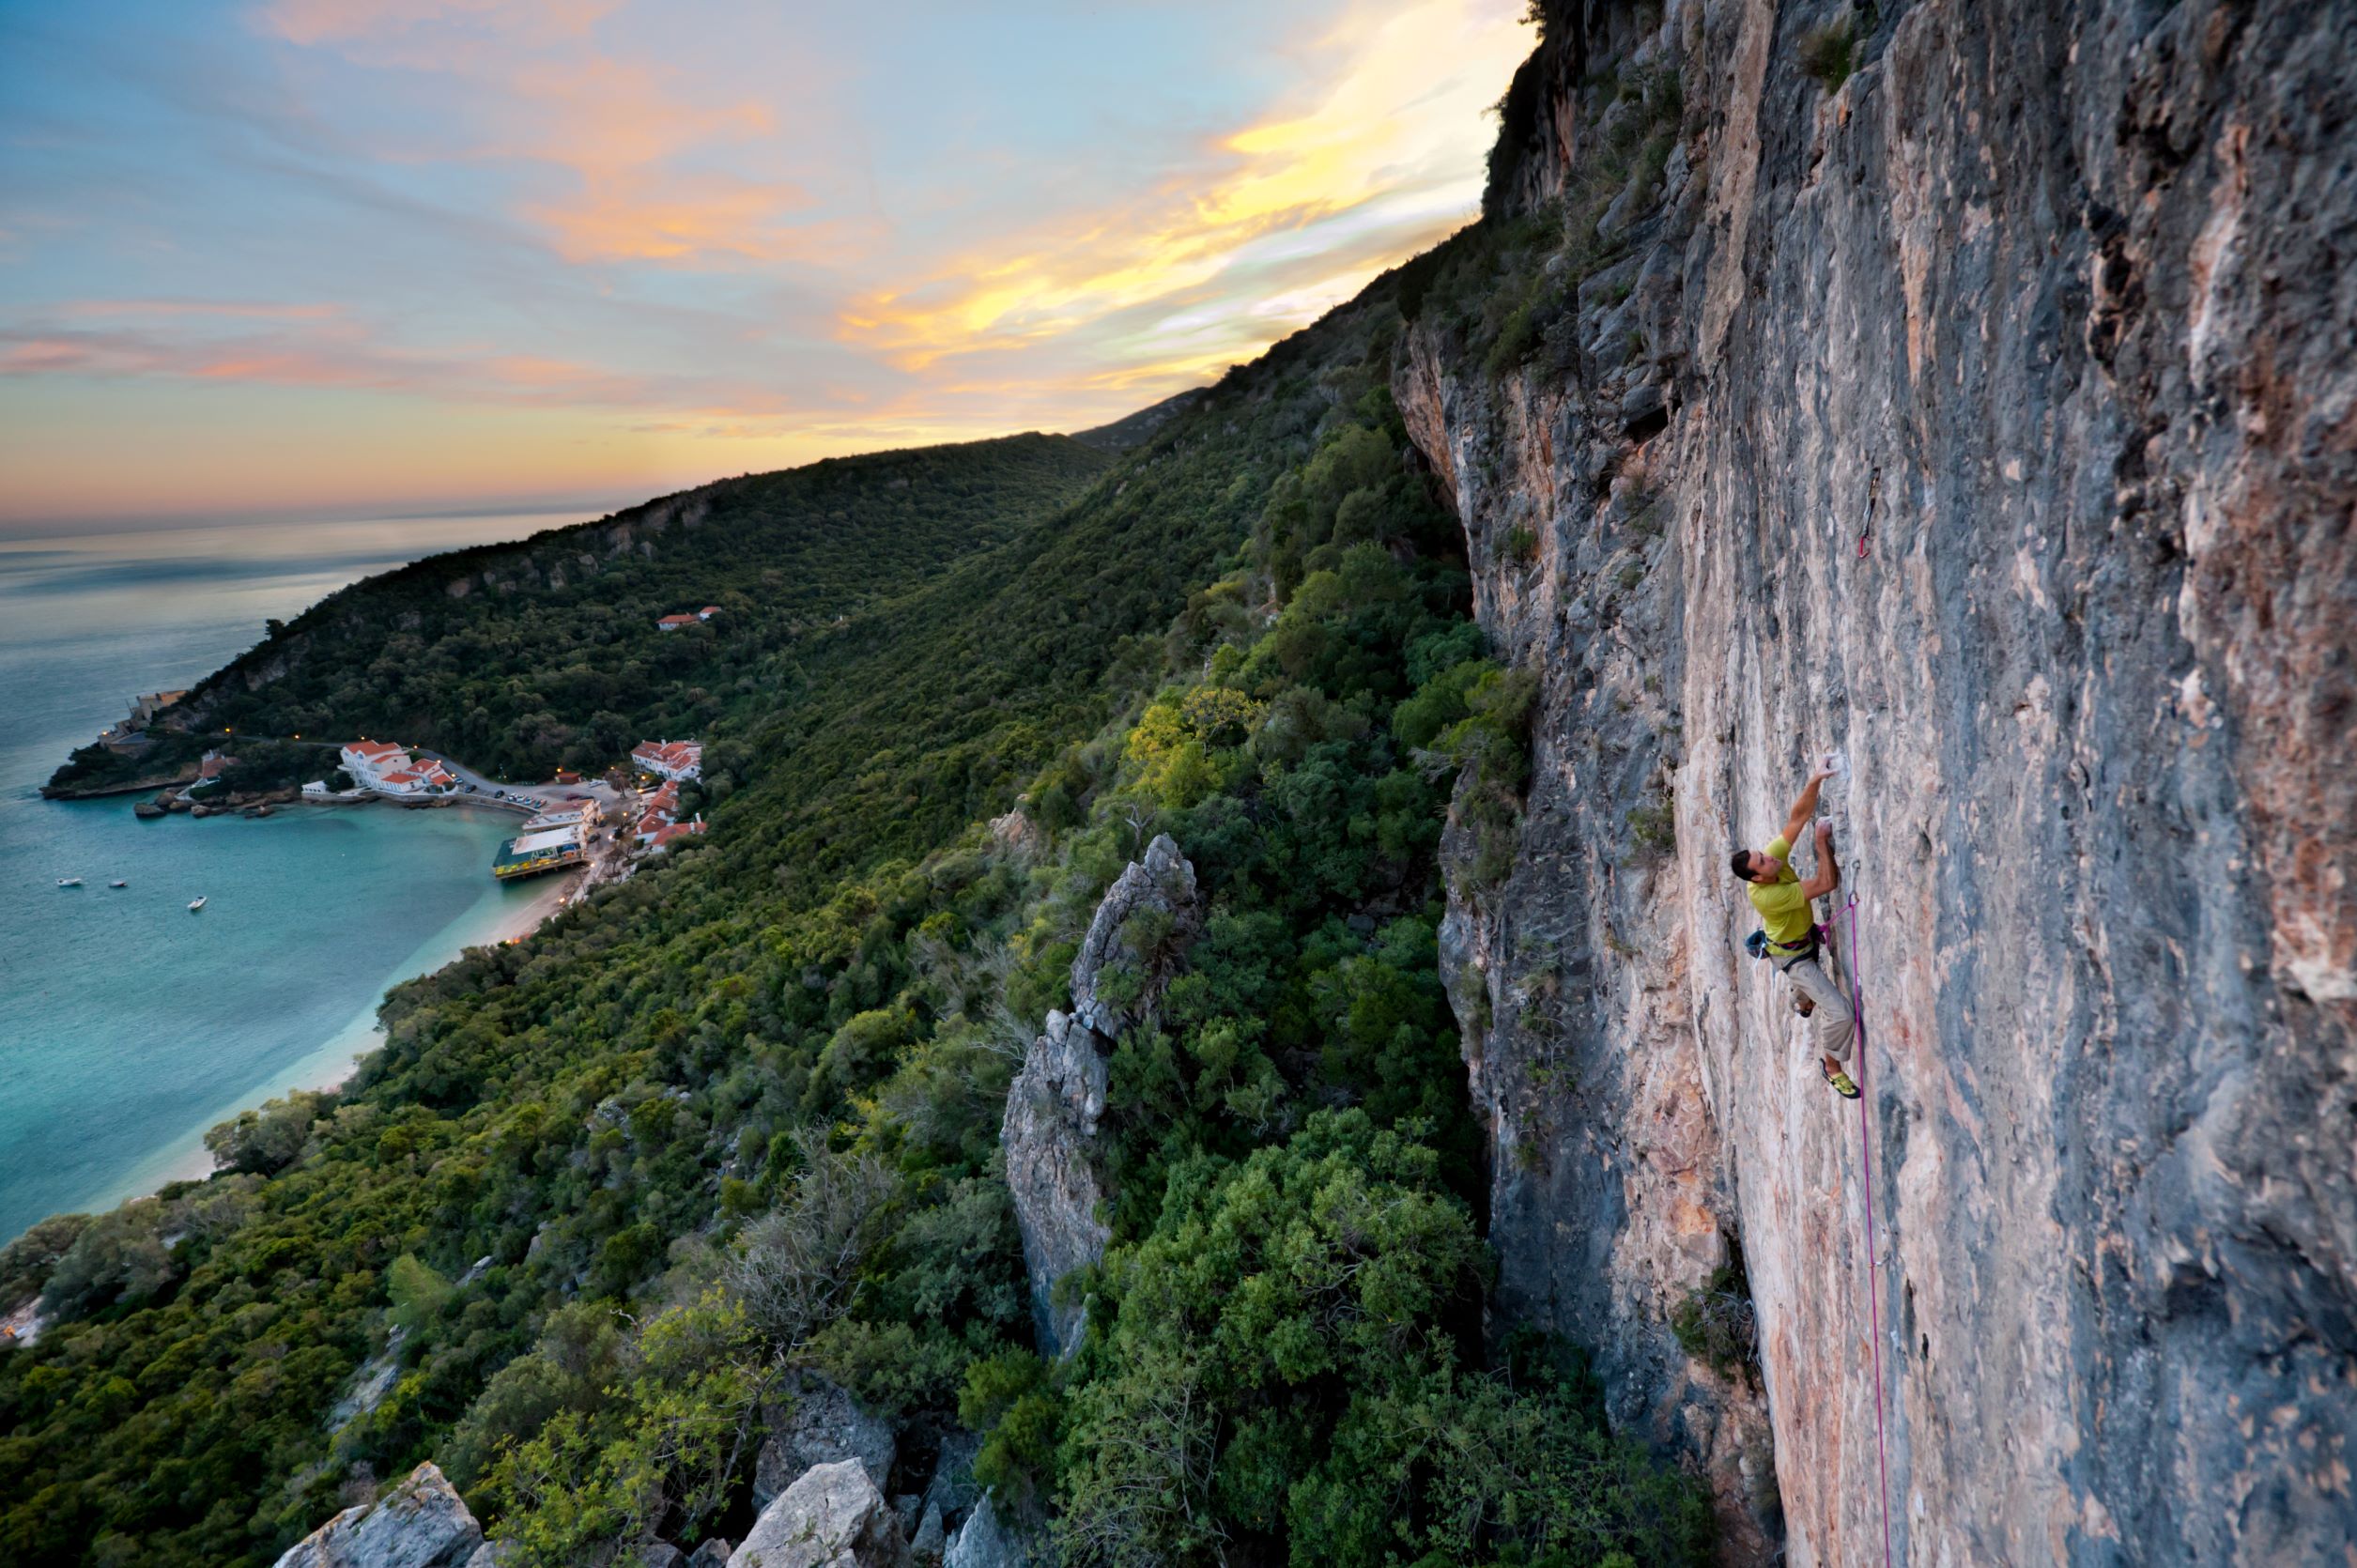 A climber sport climbing in Fenda, near Lisbon